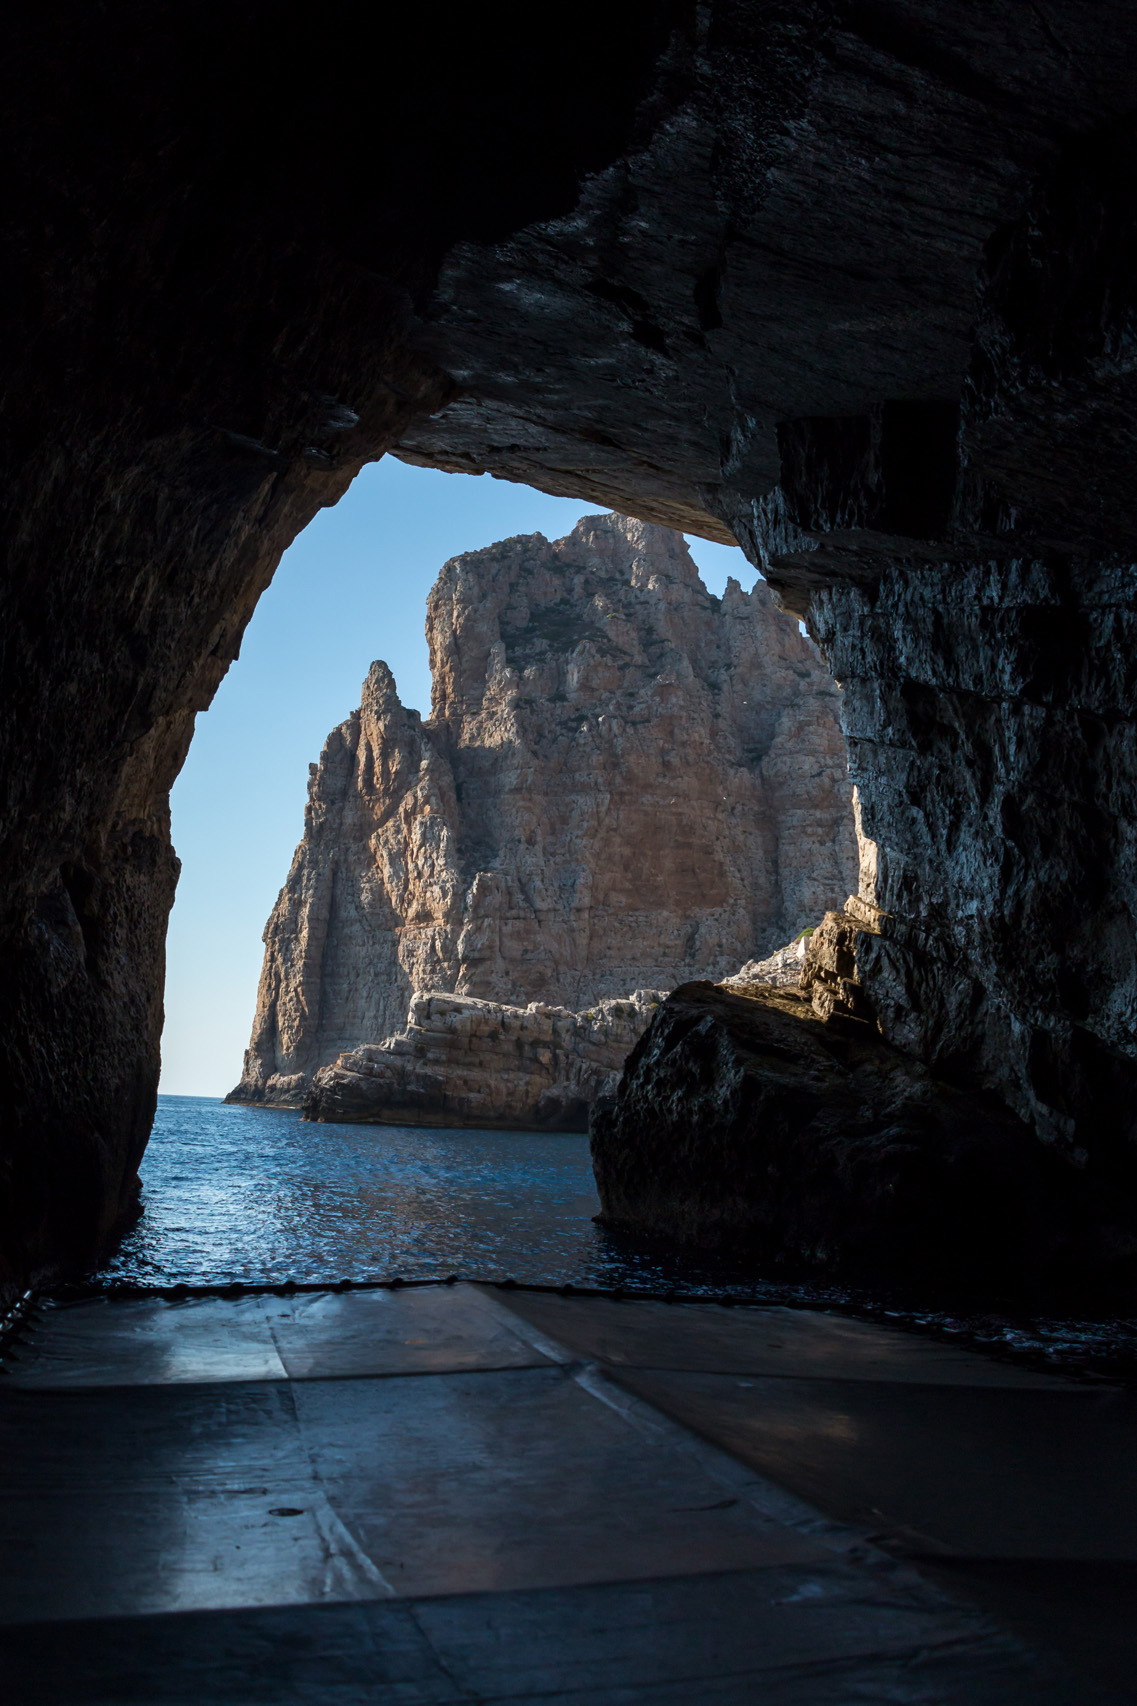 Marettimo island, Grotta Bombarda